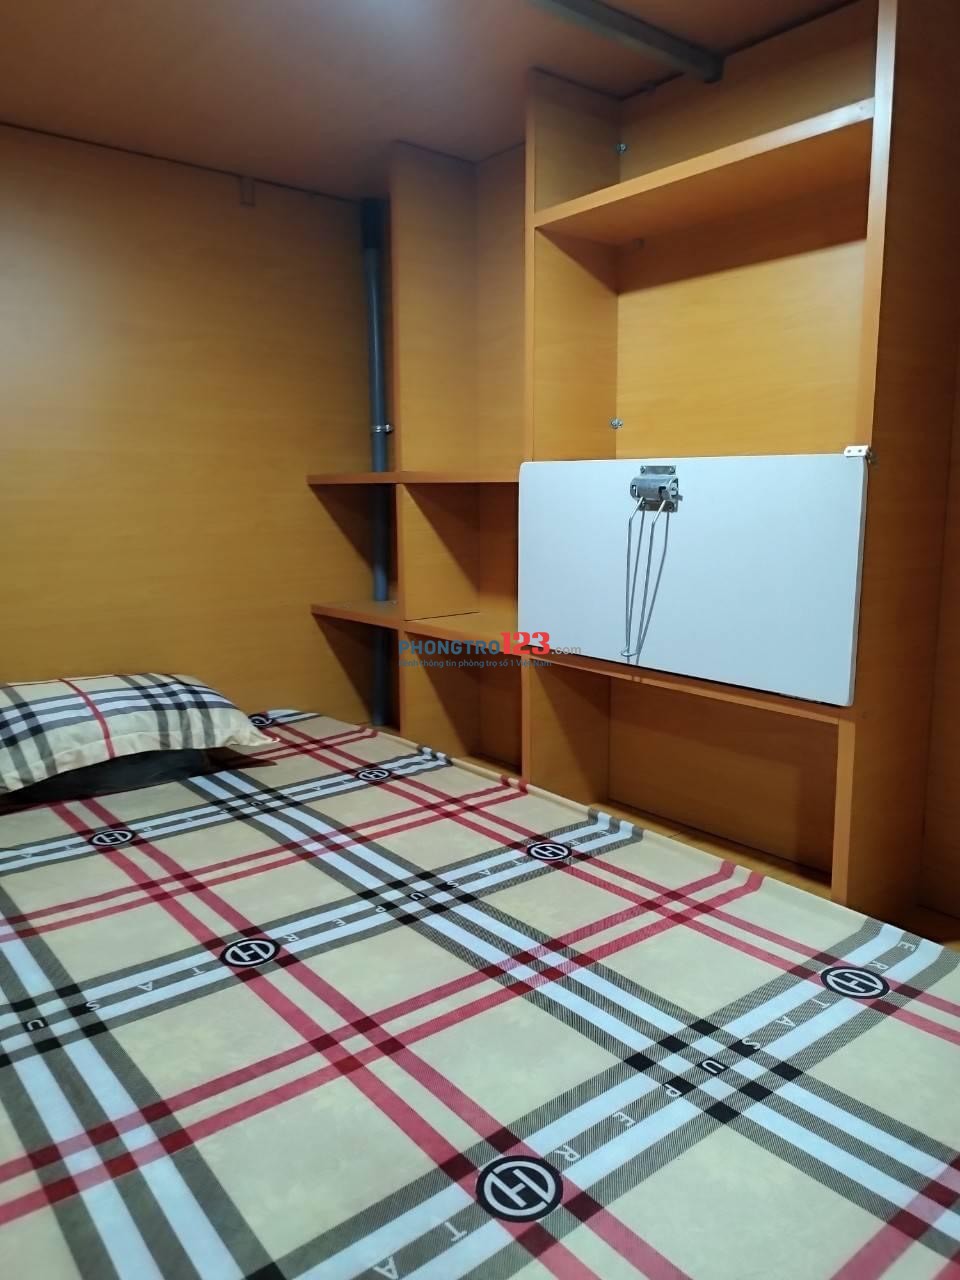 Sleep Box KTX cao cấp đầy đủ tiện nghi, yên tĩnh giá rẻ ngay đường Âu Cơ Quận Tân Phú.